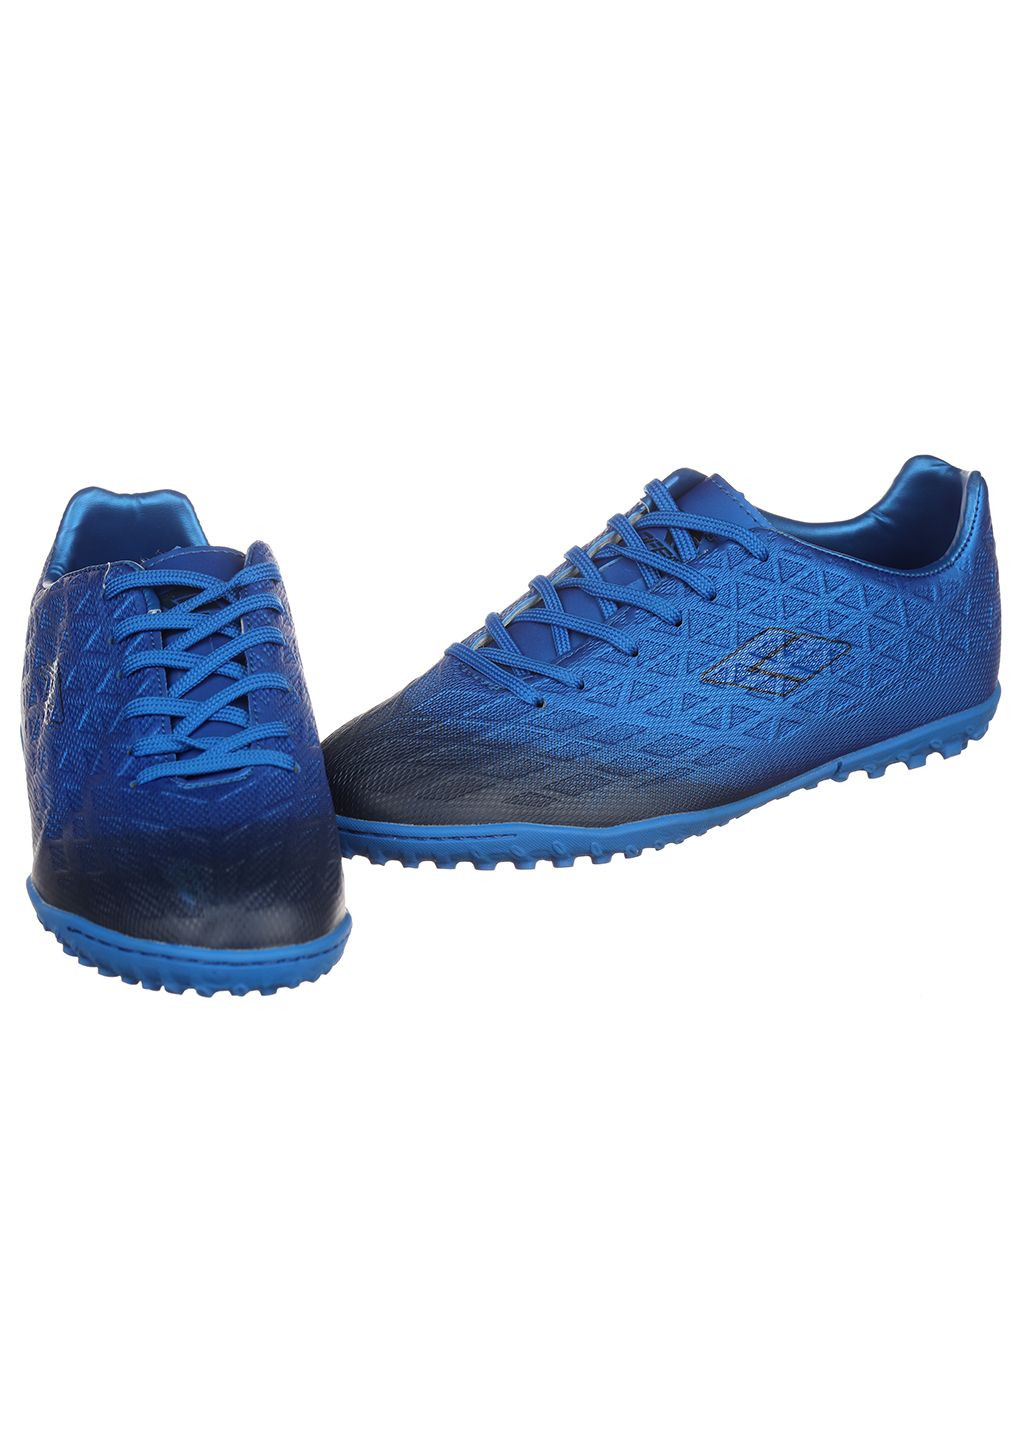 Синие подростковые сороконожки с искусственной кожи для футбола Difeno